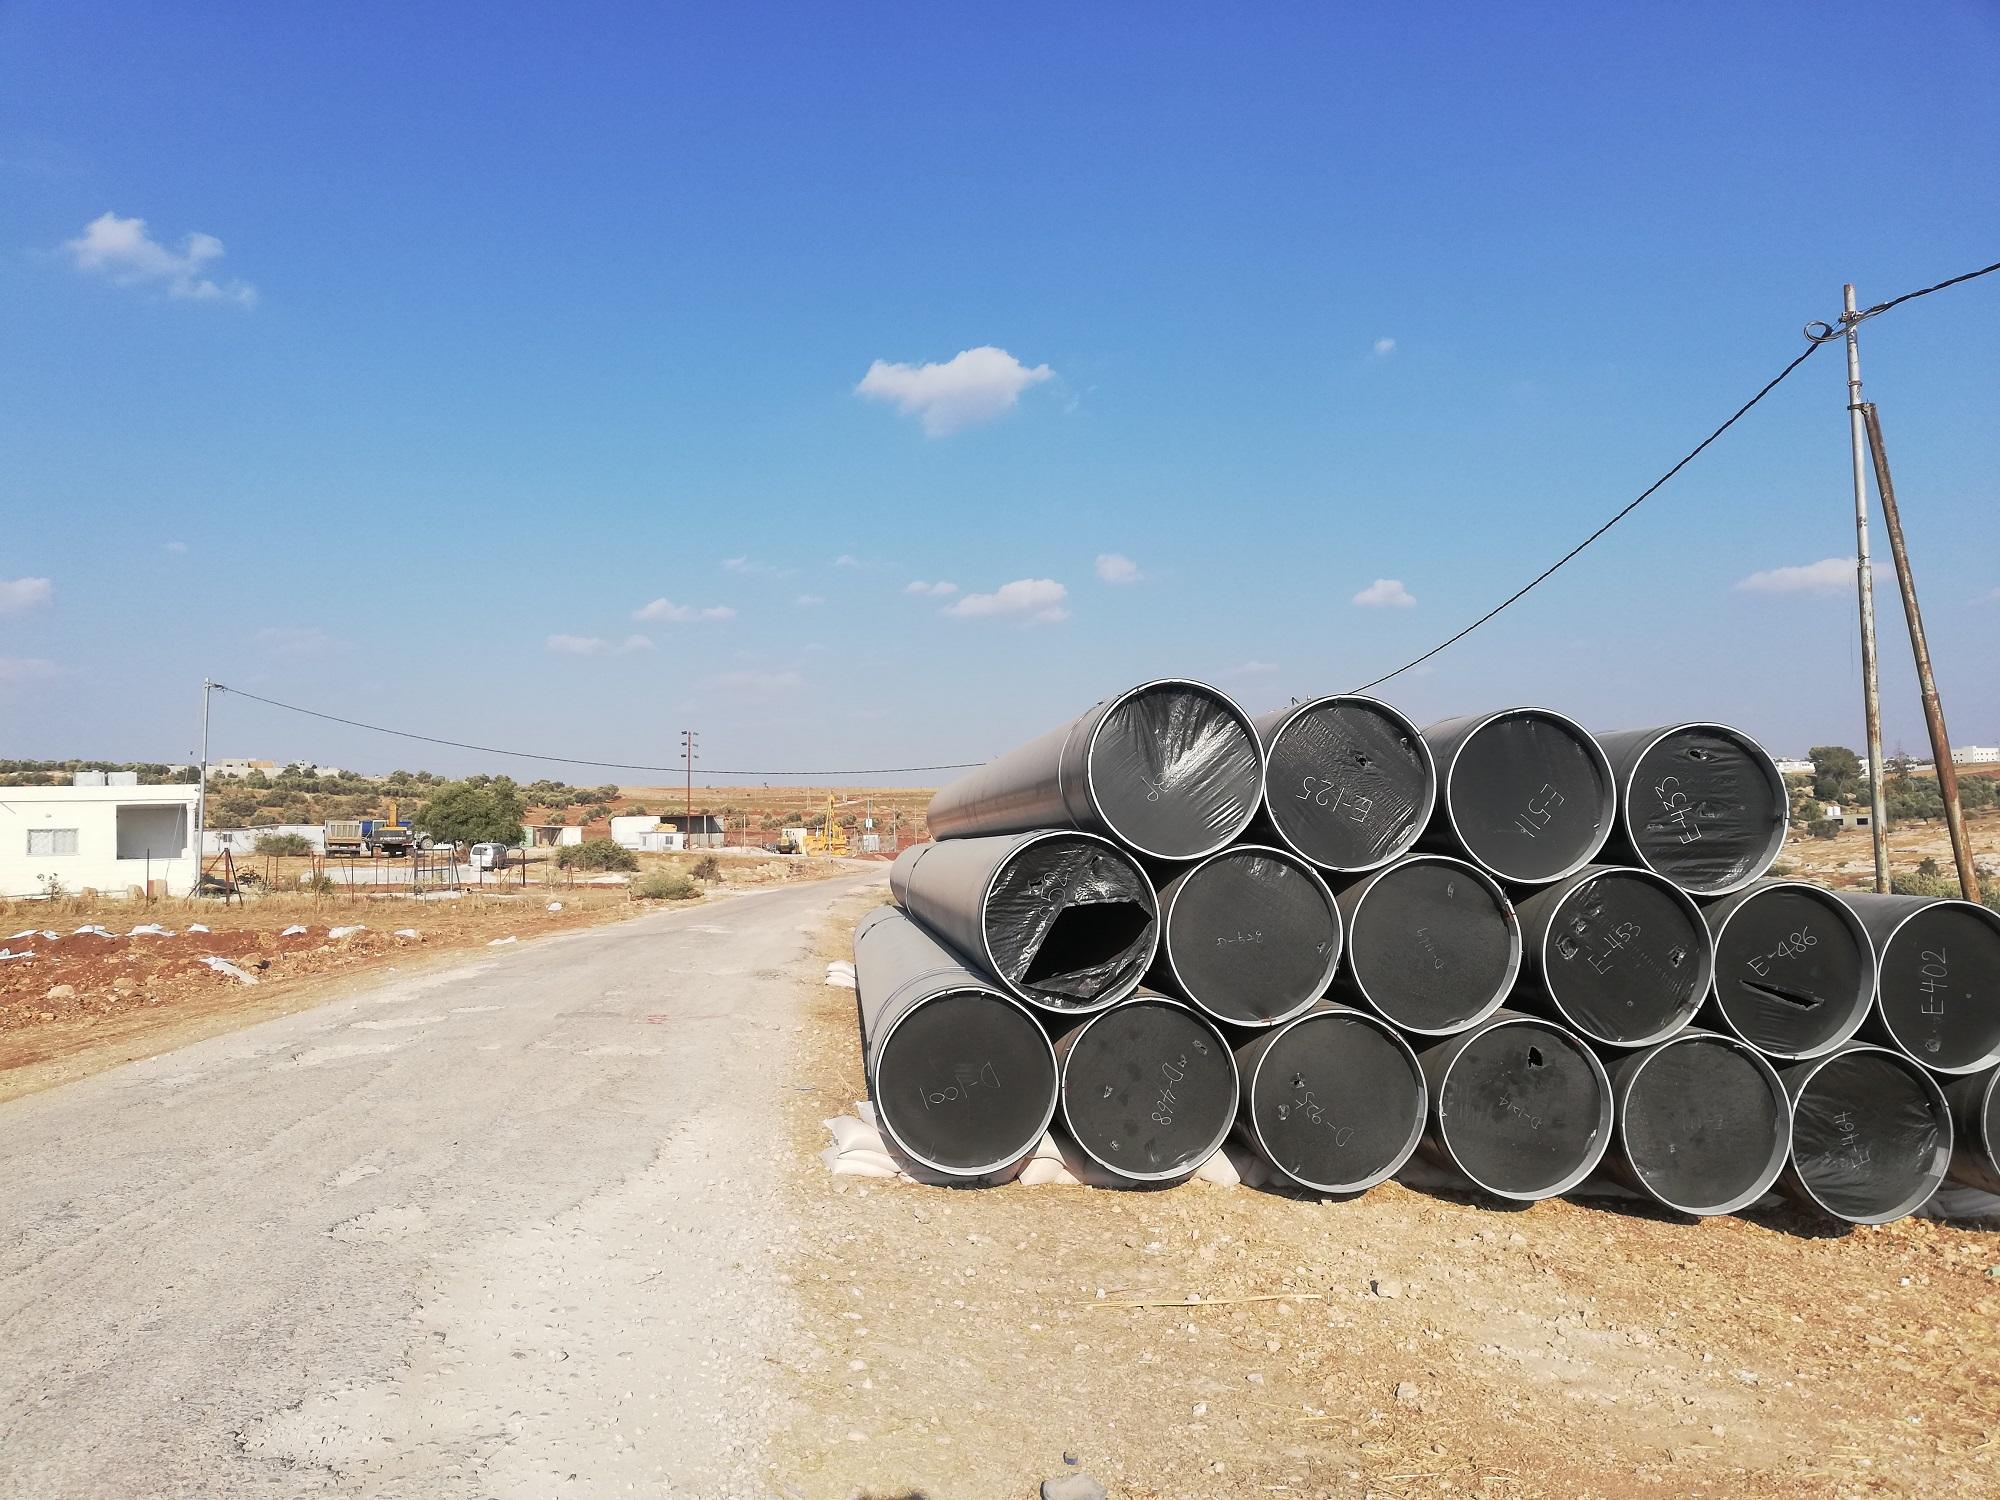 الصورة من قرية مخربا غربي محافظة إربد، وتظهر أنابيب تم استخدامها لنقل الغاز المستورد من شركة نوبل إنيرجي إلى الأردن، 8 أغسطس 2018. (المملكة)